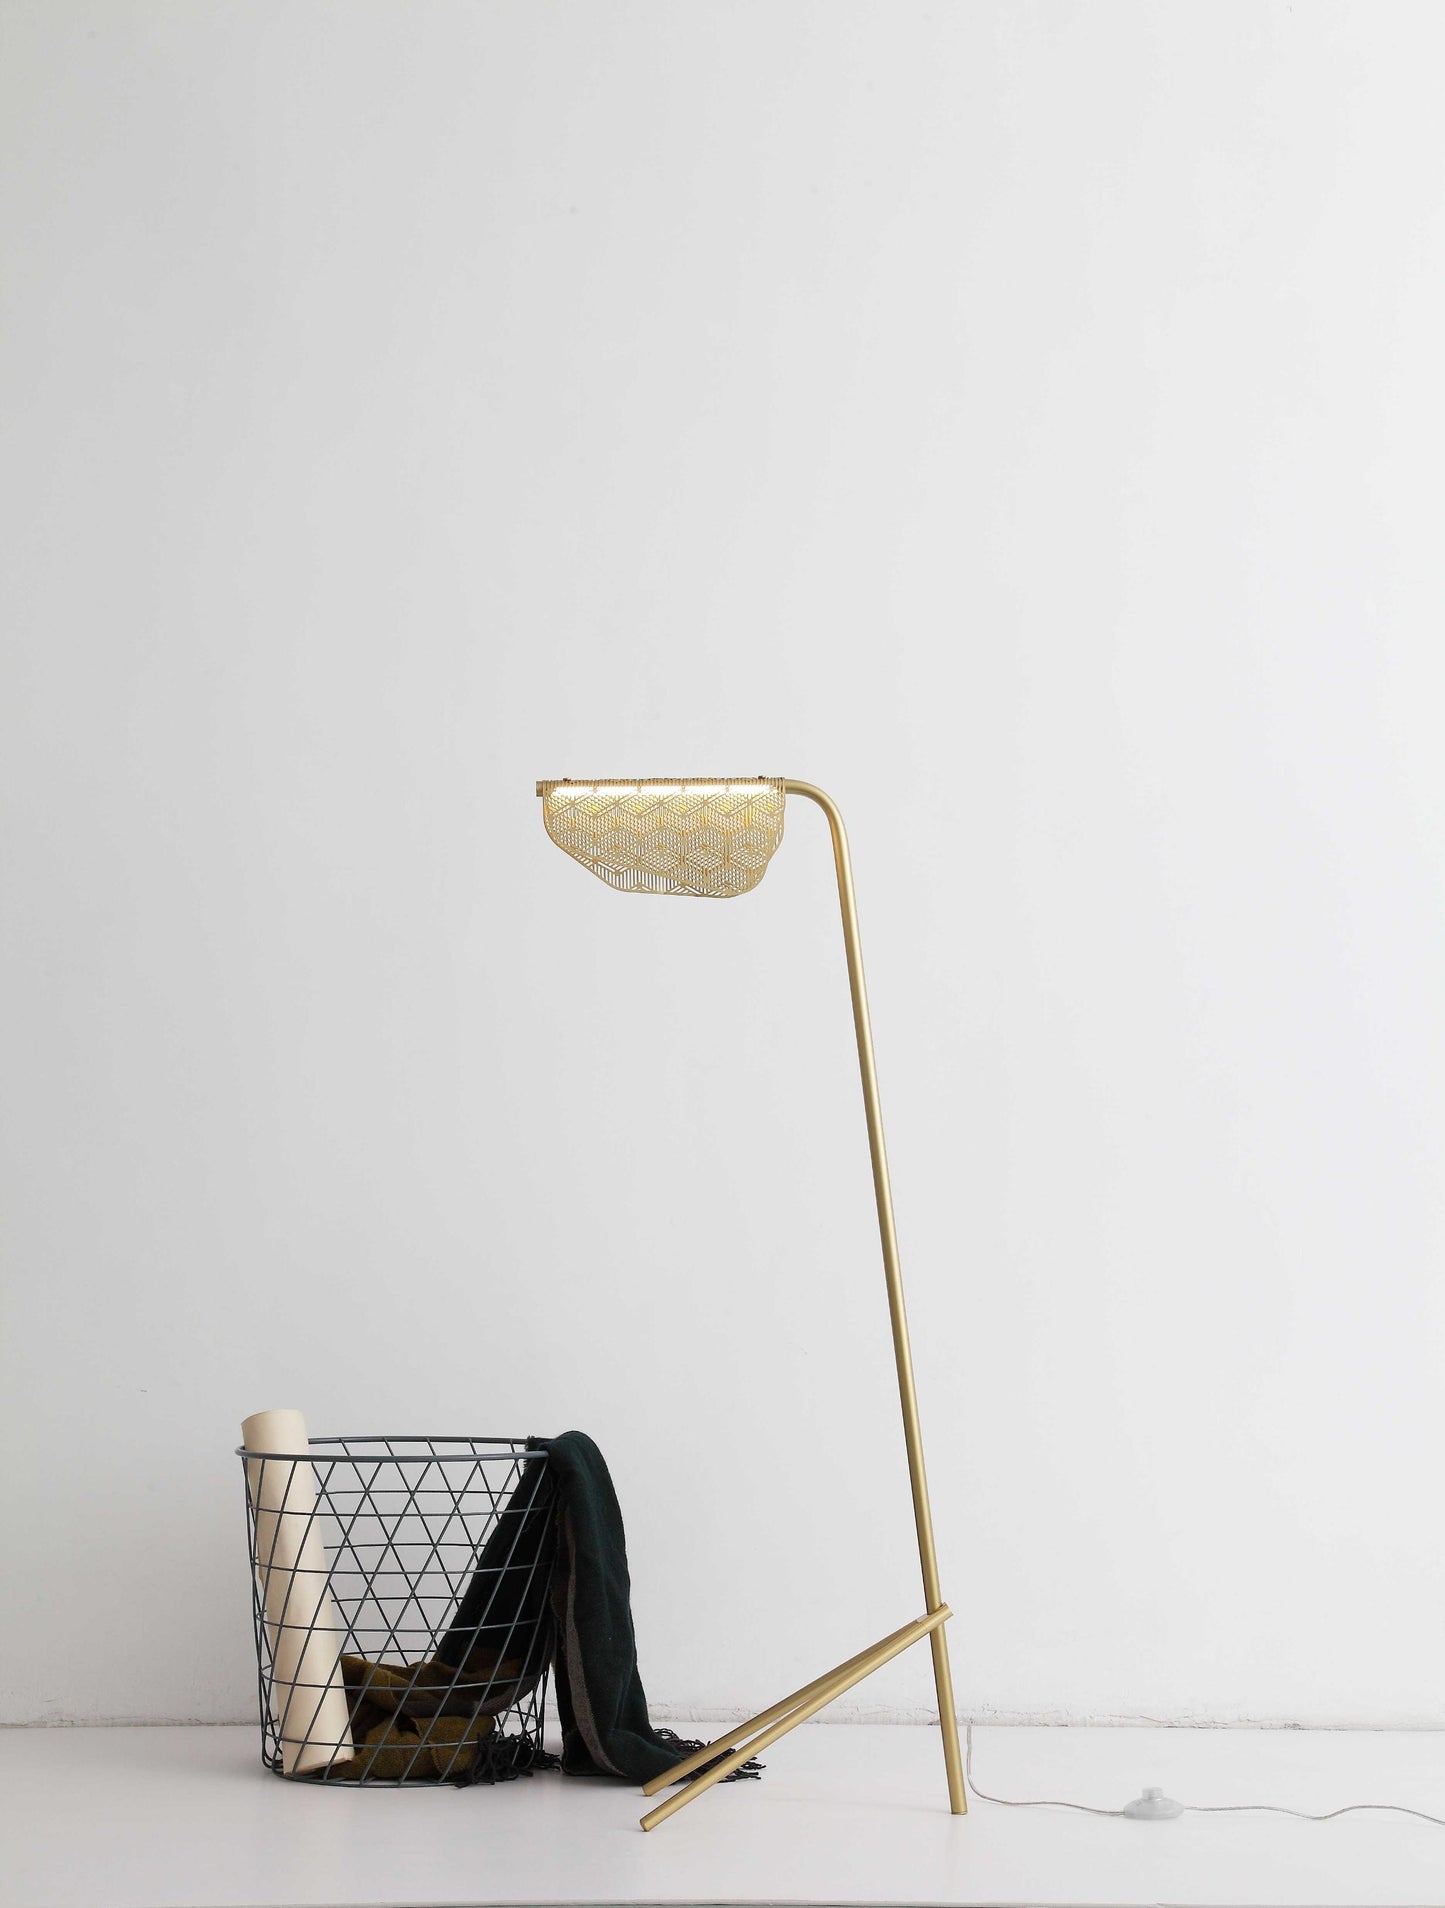 19" X 11" X 48" Golden Carbon Floor Lamp